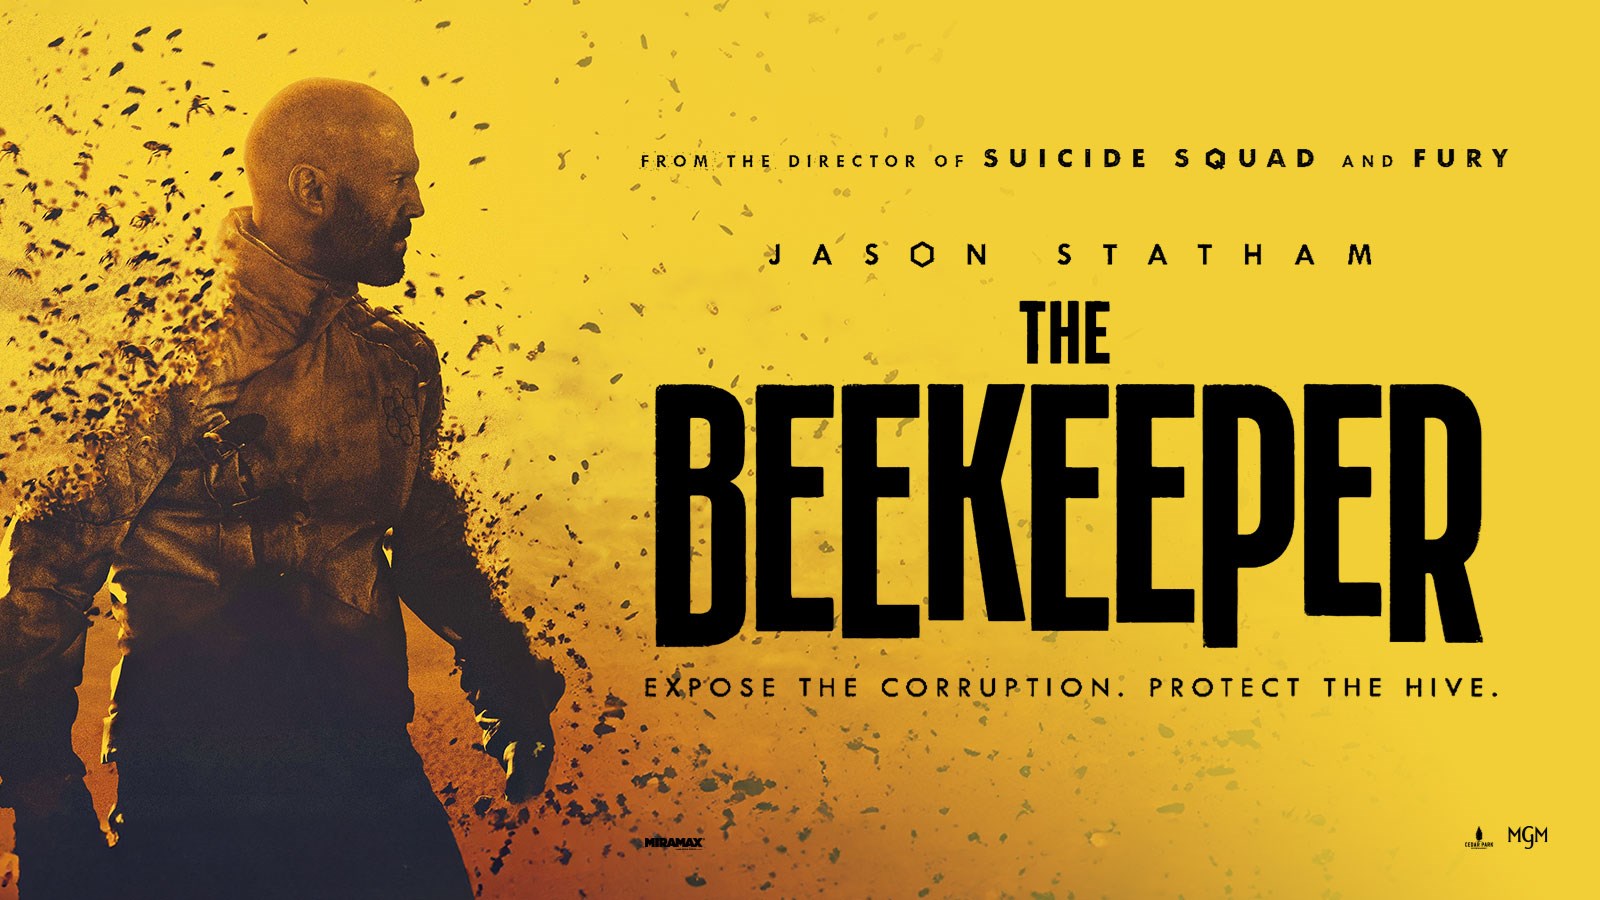 BEEKEEPER, THE